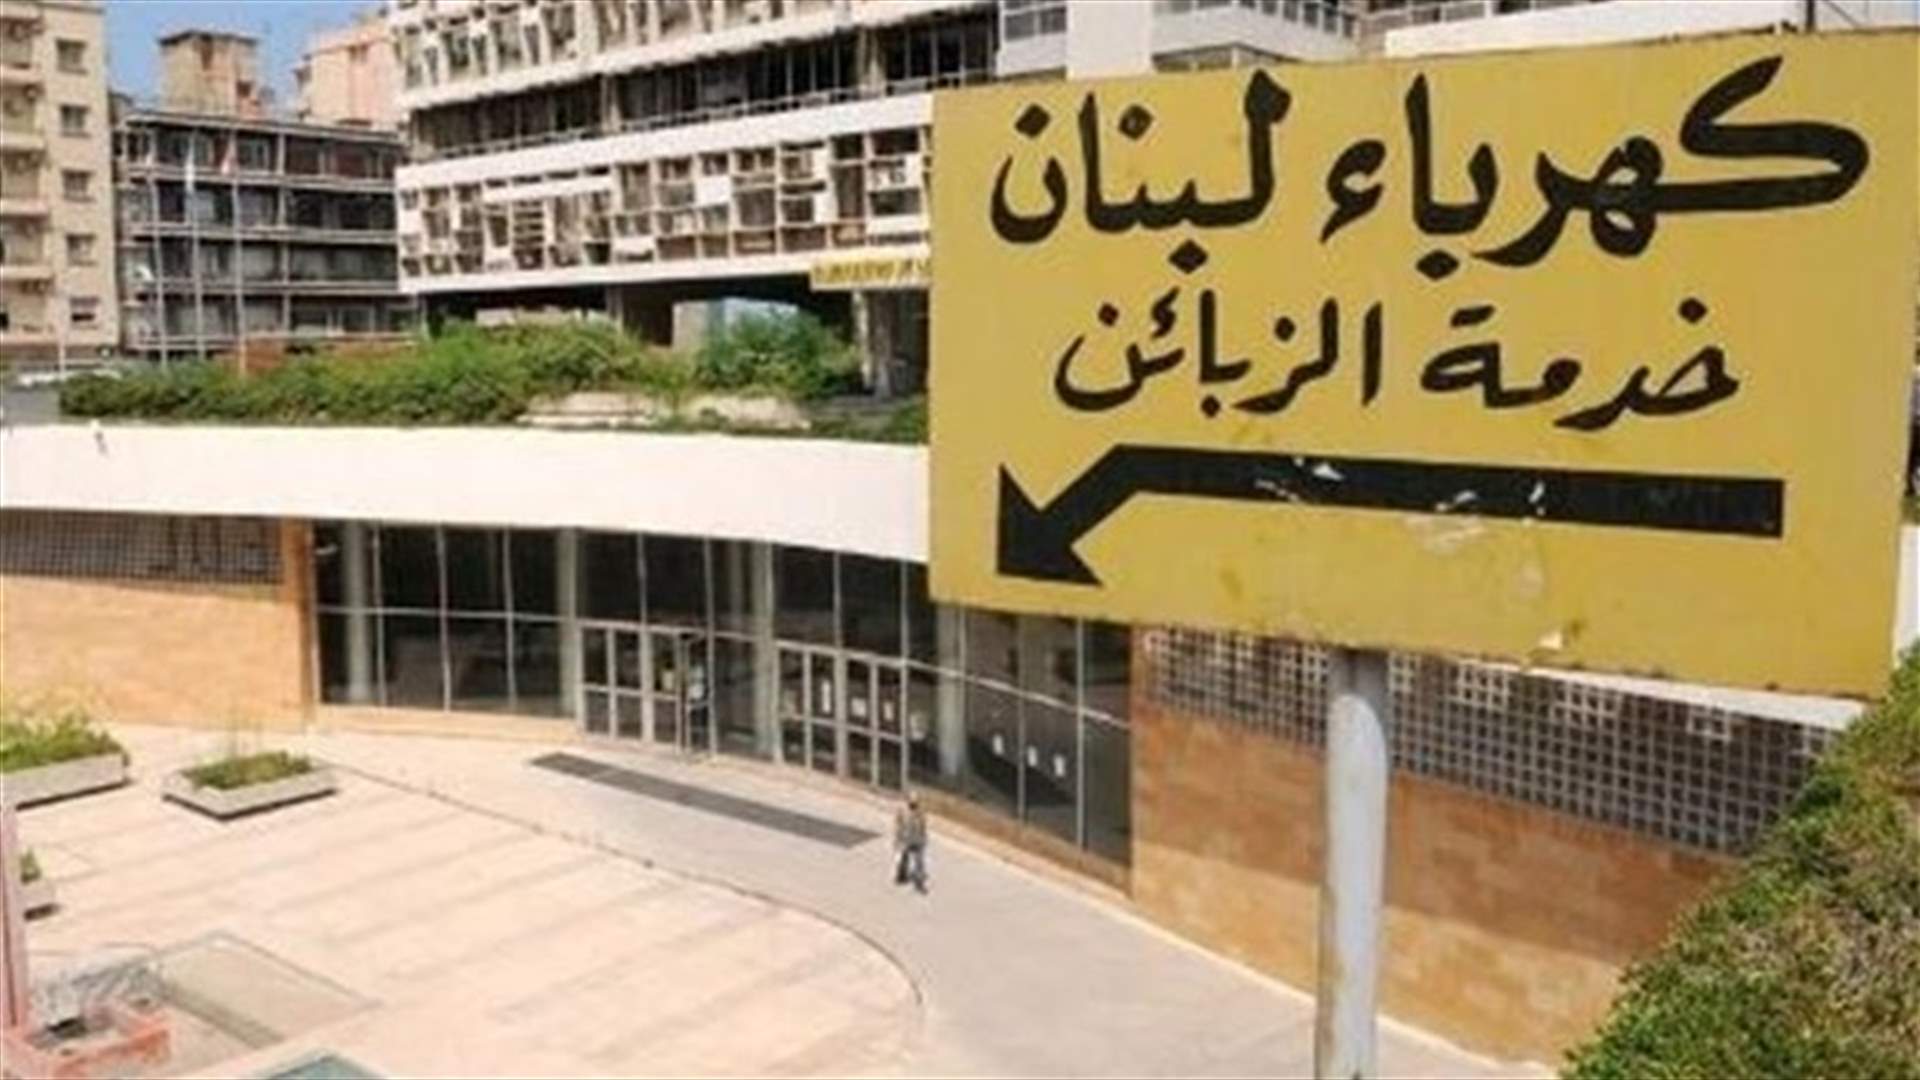 كهرباء لبنان عن العدادات الذكية: نحرص على الالتزام بالقوانين